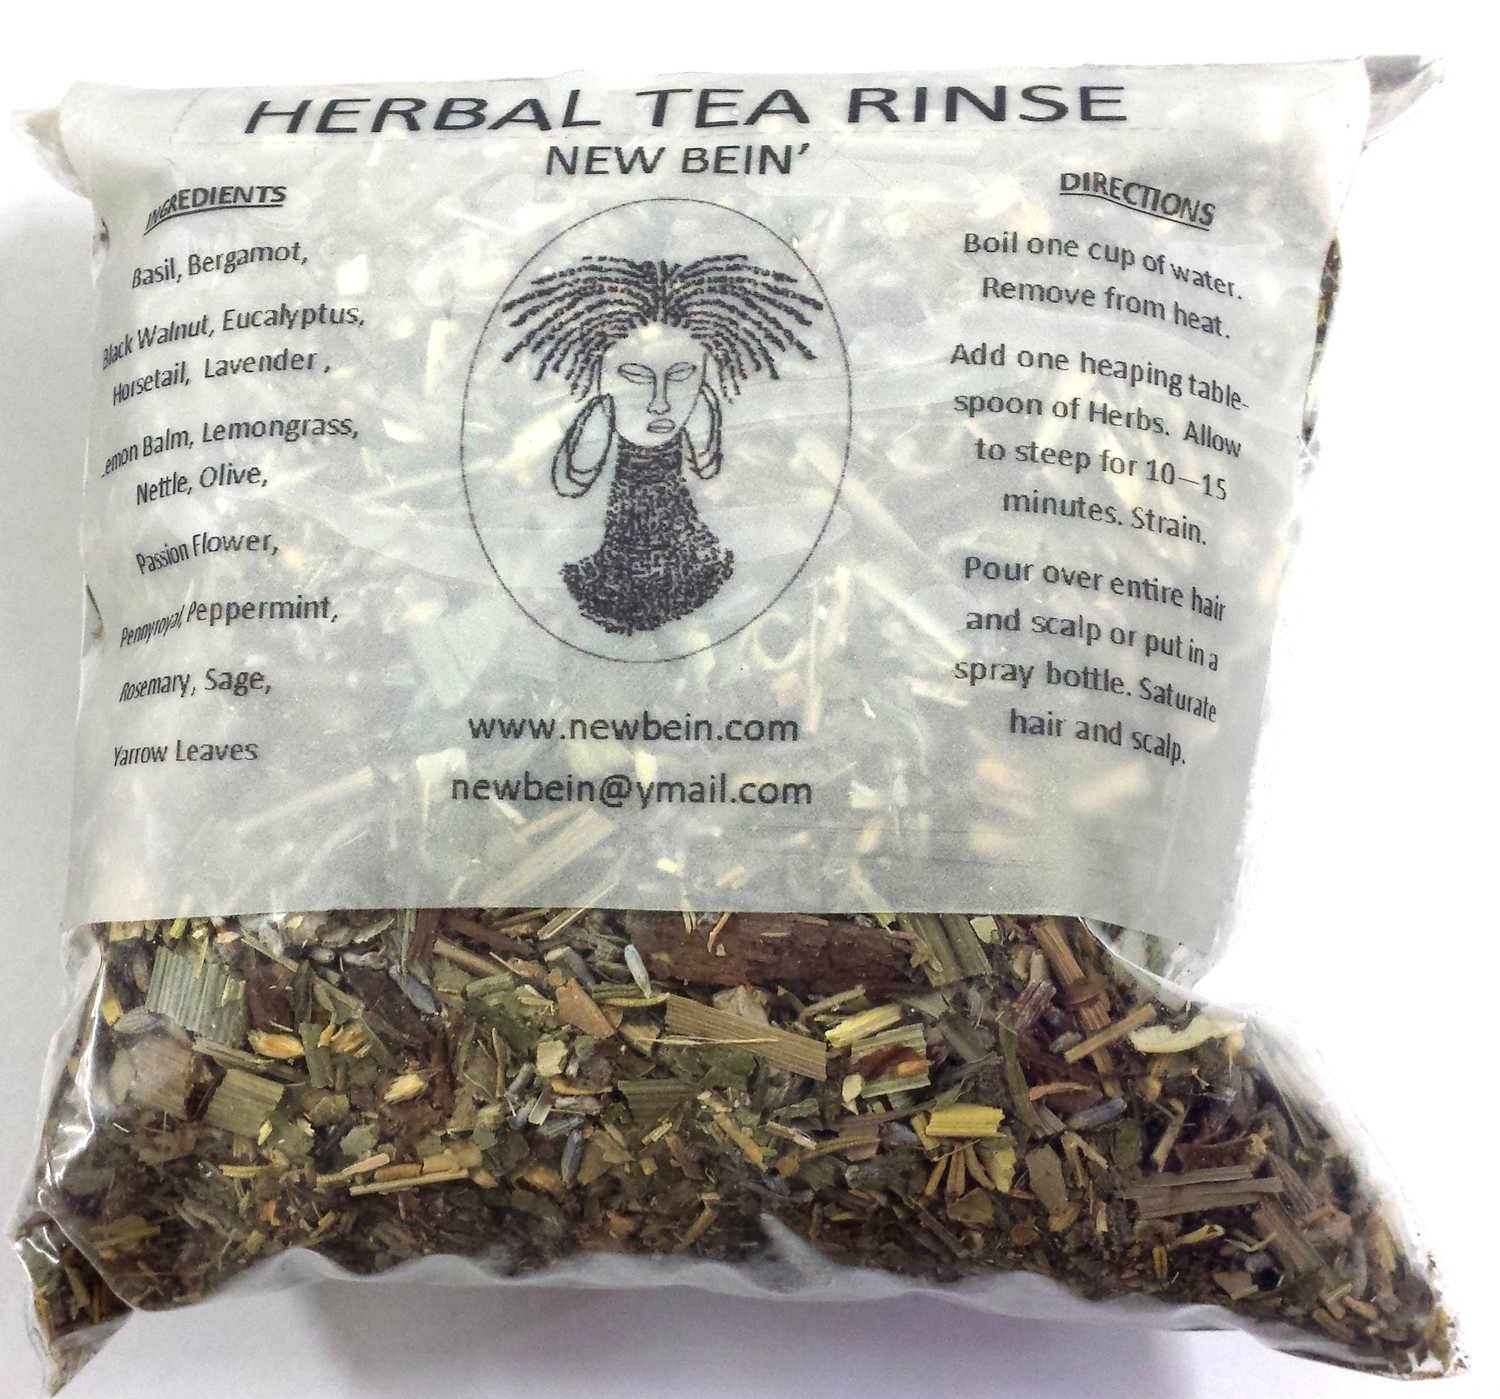 New Bein' Herbal Tea Rinse